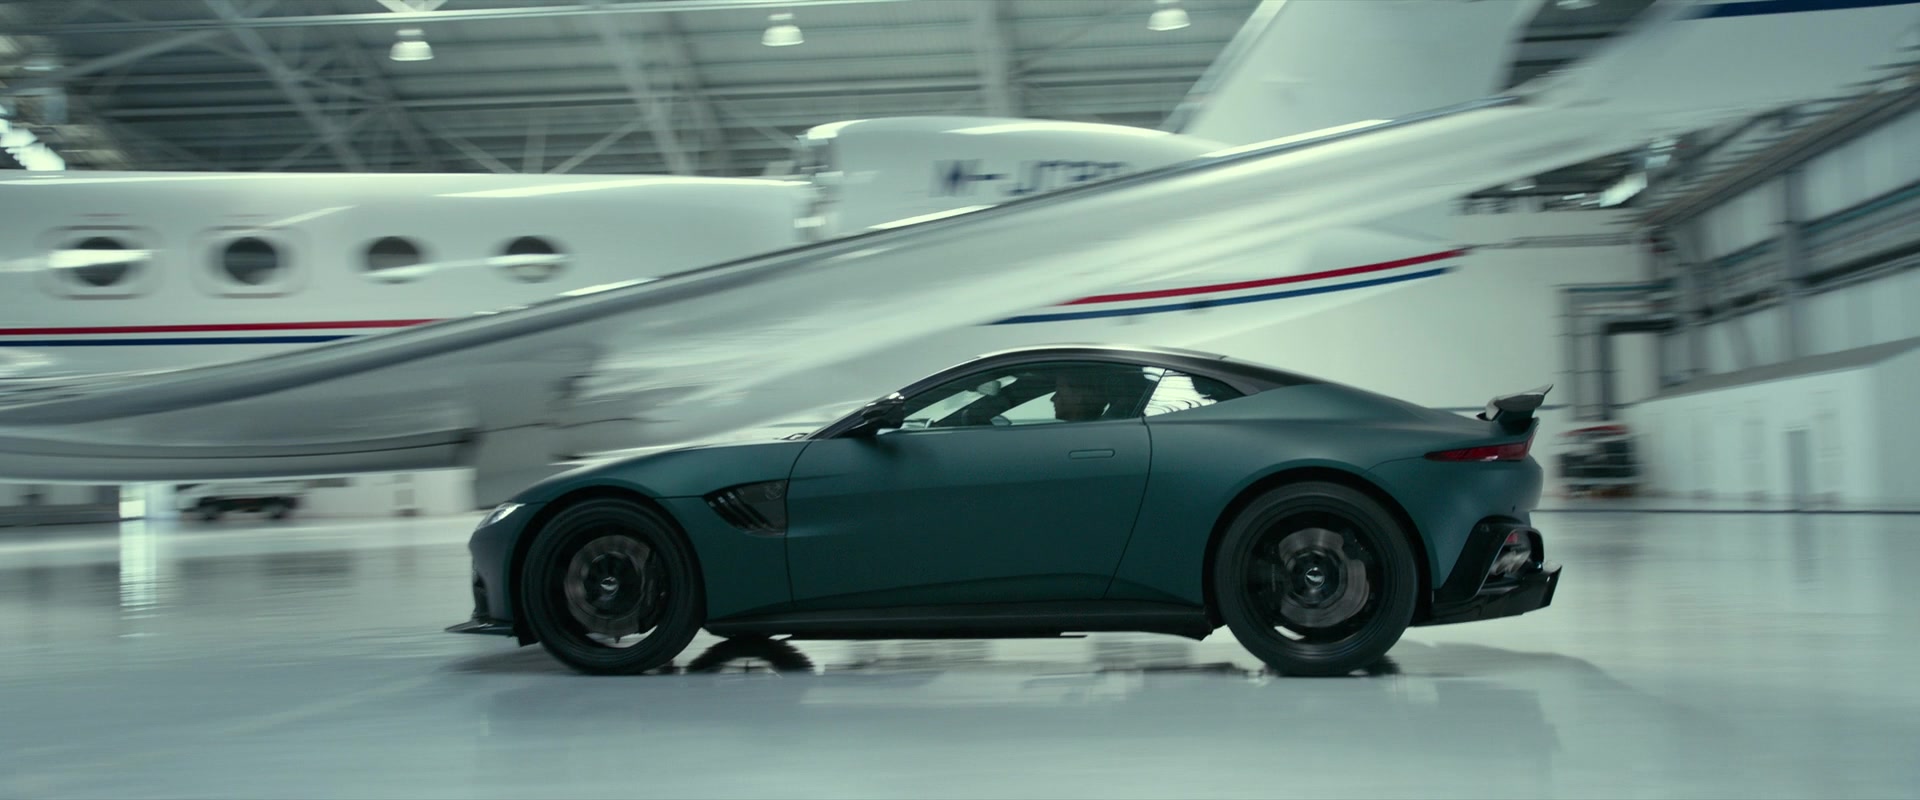 Aston Martin Sacrificed 30 Cars For Mark Wahlberg's New Film